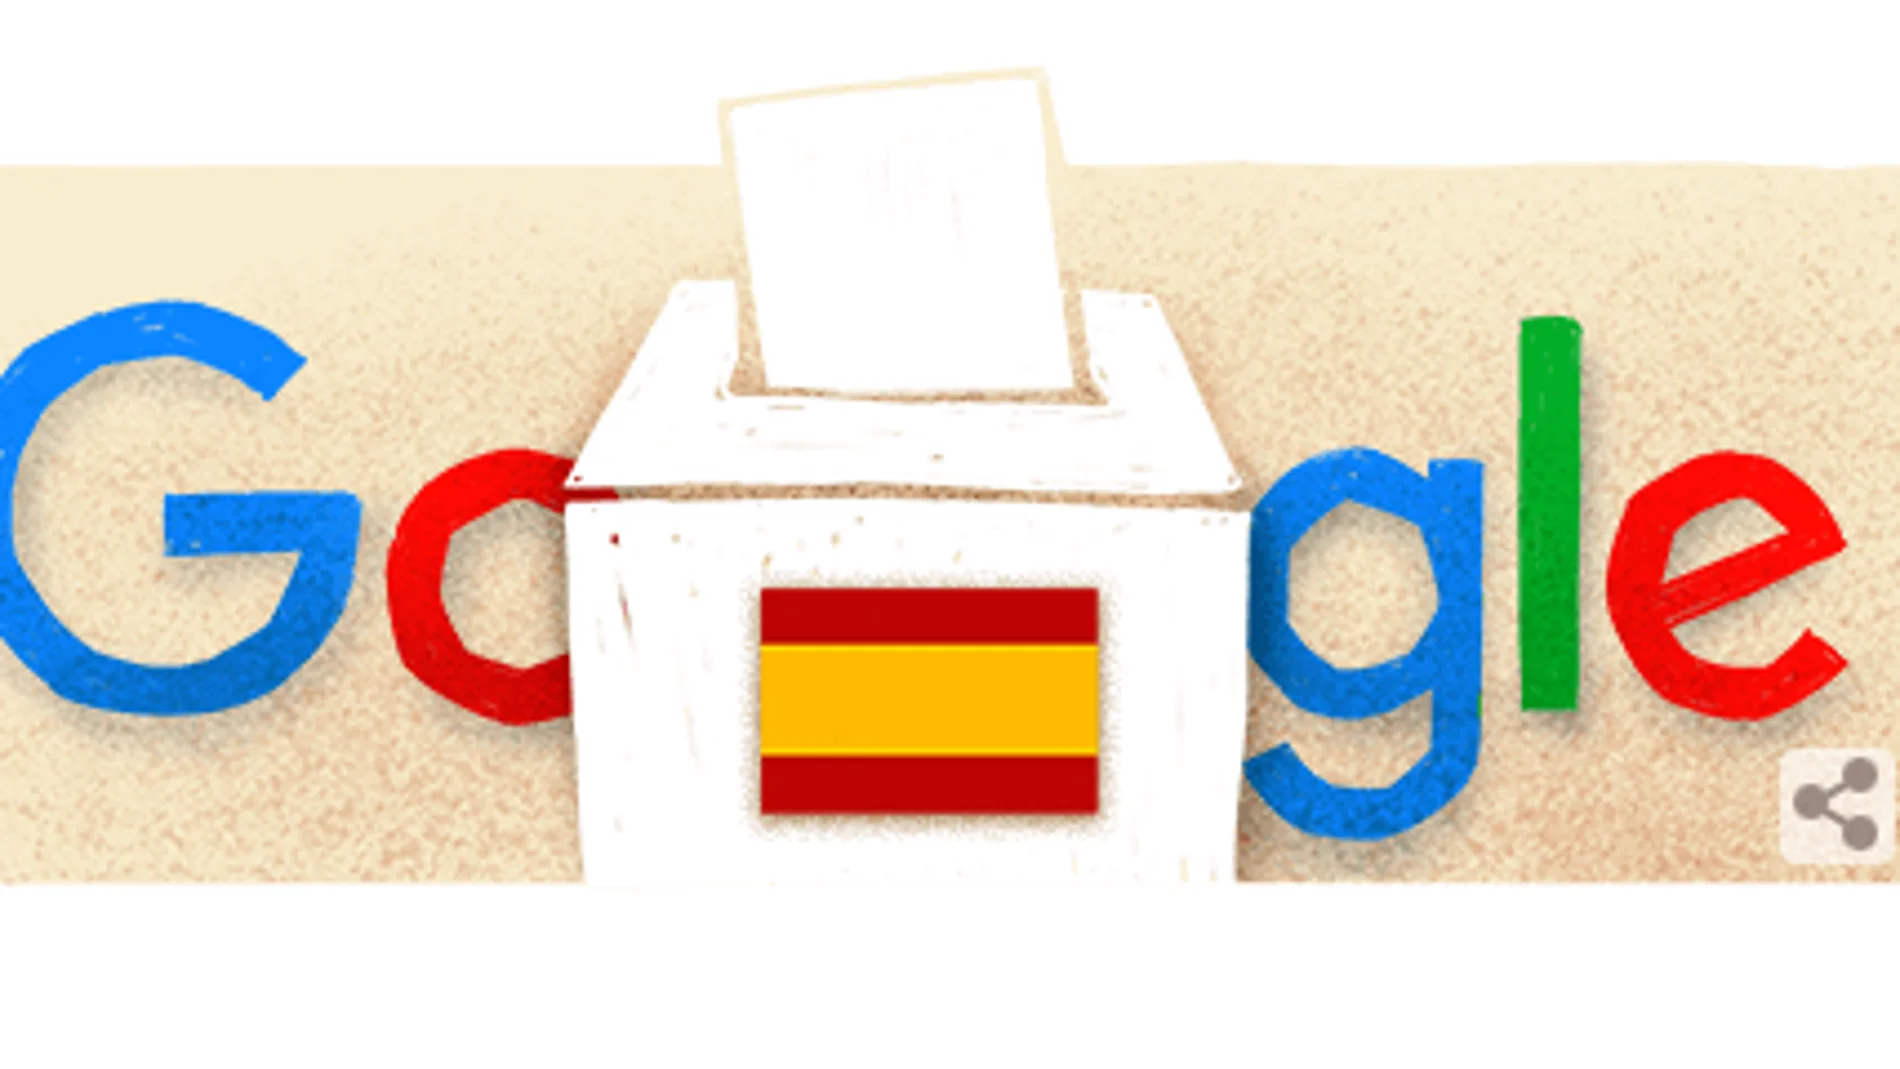 Papeleta, urna y democracia: El doodle de Google dedicado a las elecciones generales 23J